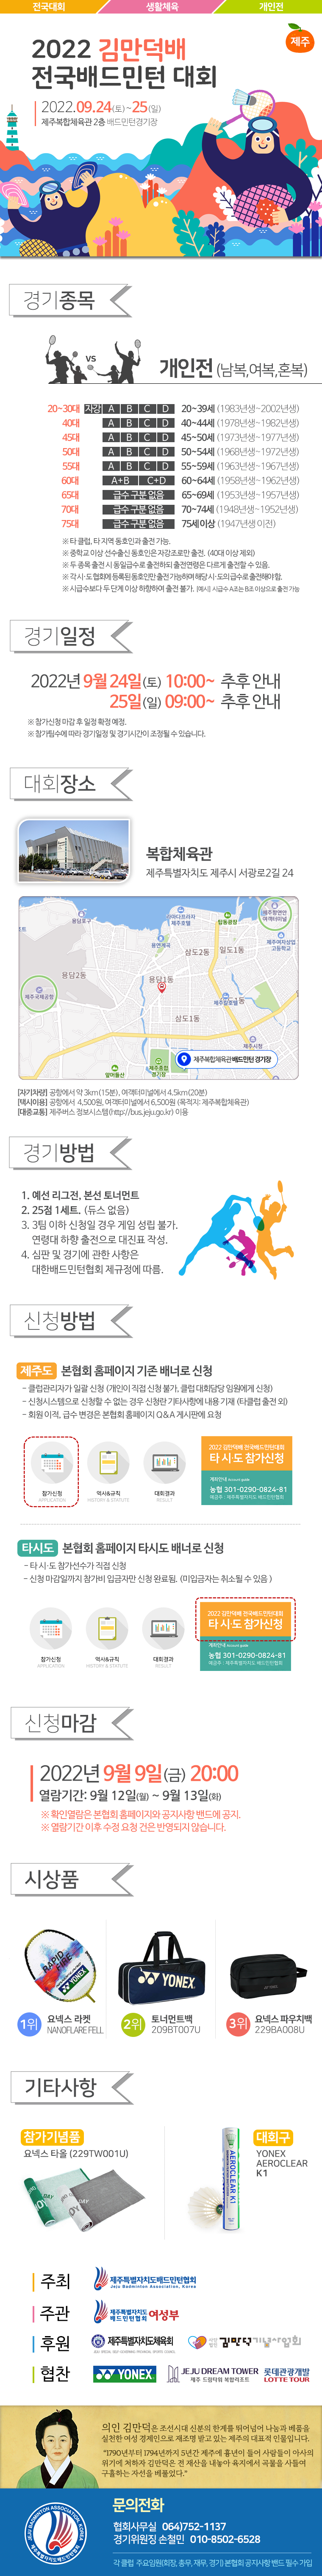 [대회] 2022 김만덕배 배드민턴대회.png